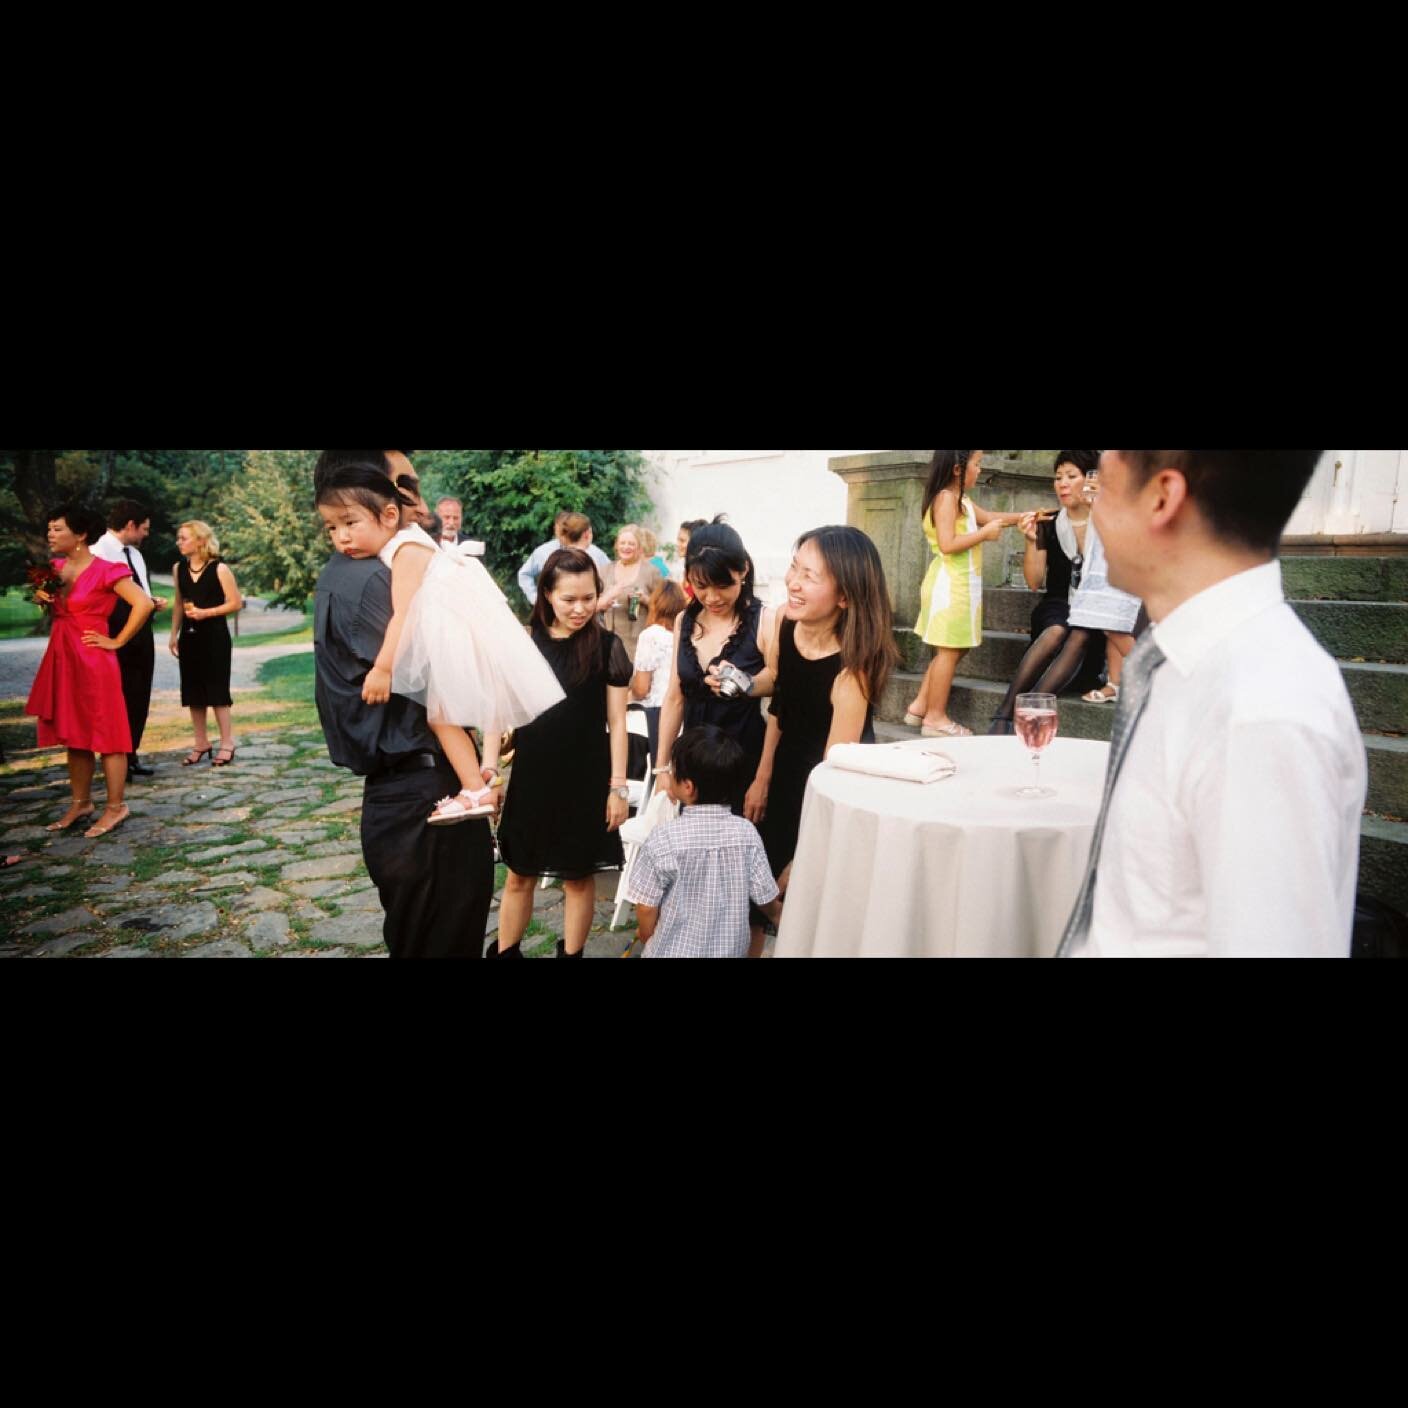 Clermont wedding. #xpan #fujinph400 #hudsonvalleywedding